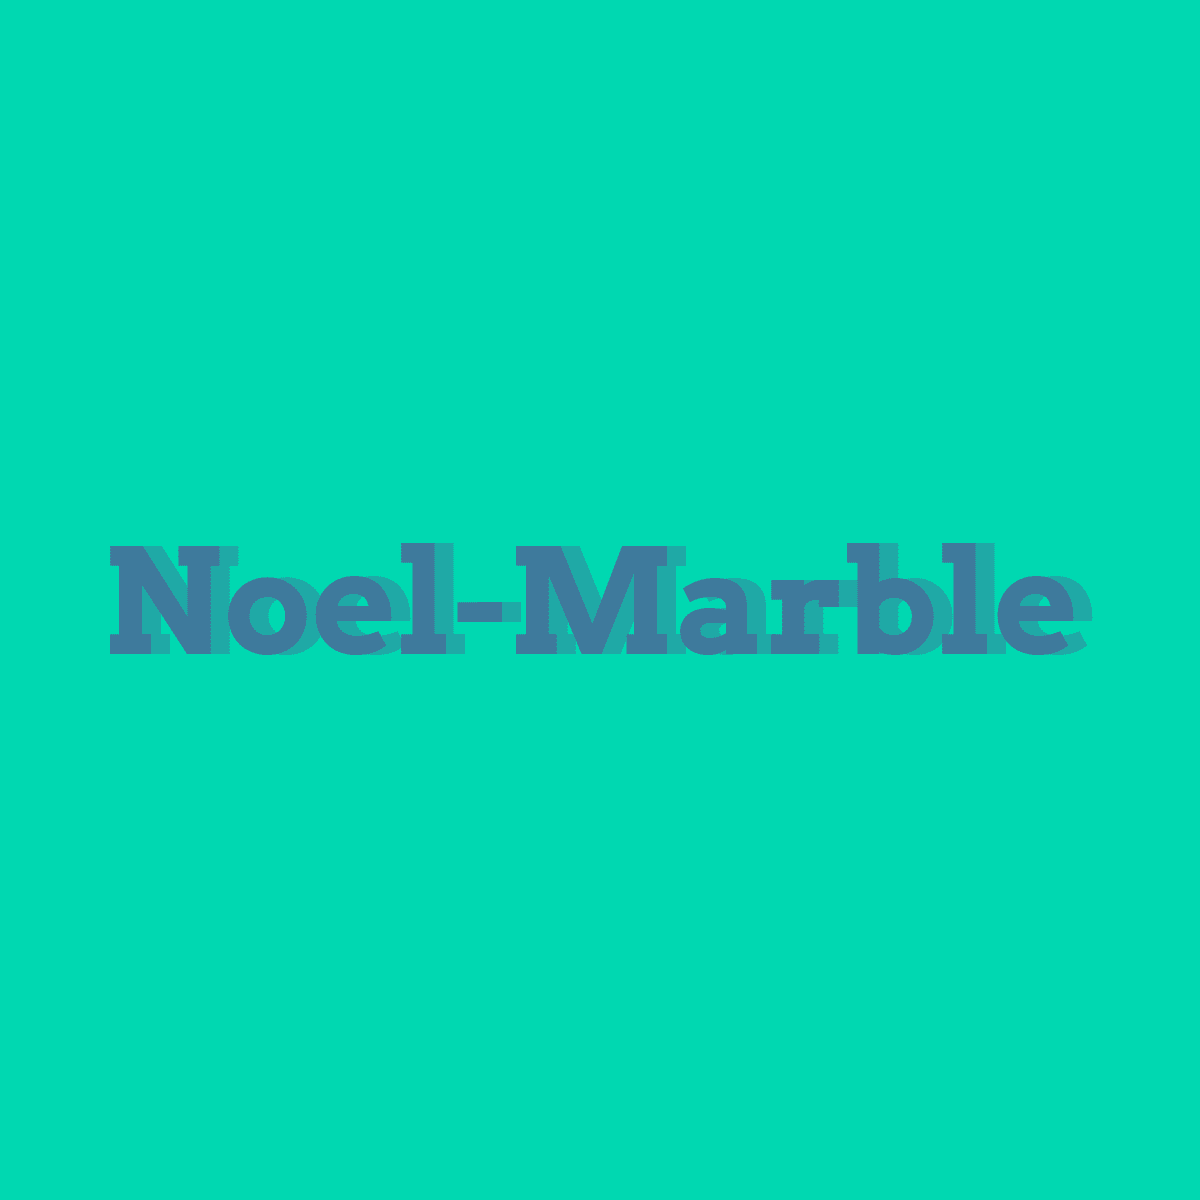 Noel-Marble